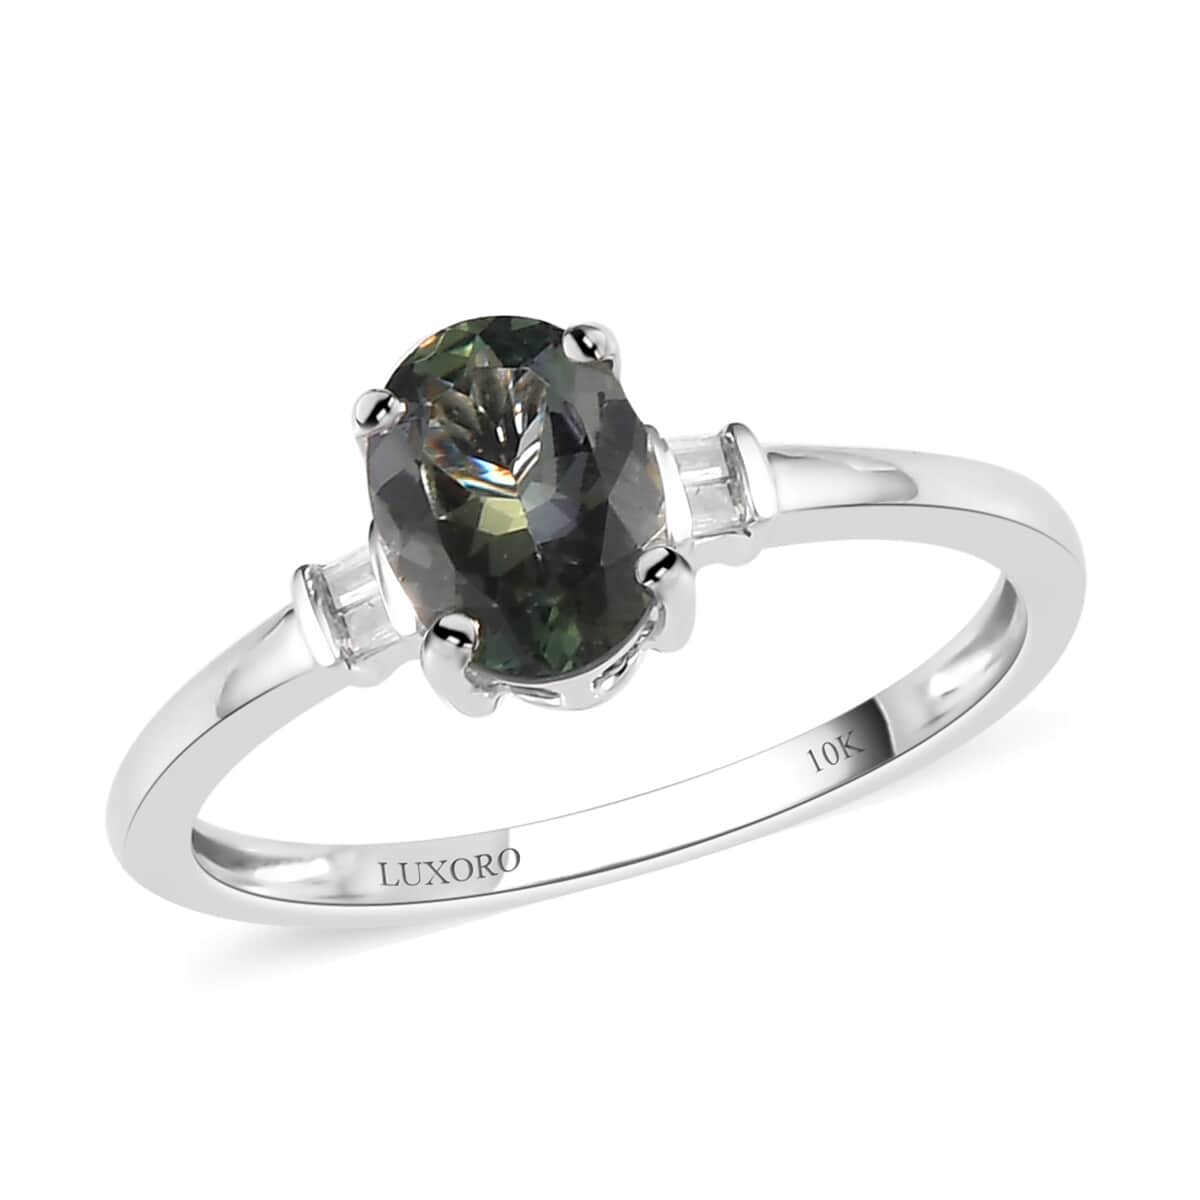 LUXORO 10K White Gold Premium Green Tanzanite and G-H I3 Diamond Ring 1.15 ctw image number 0